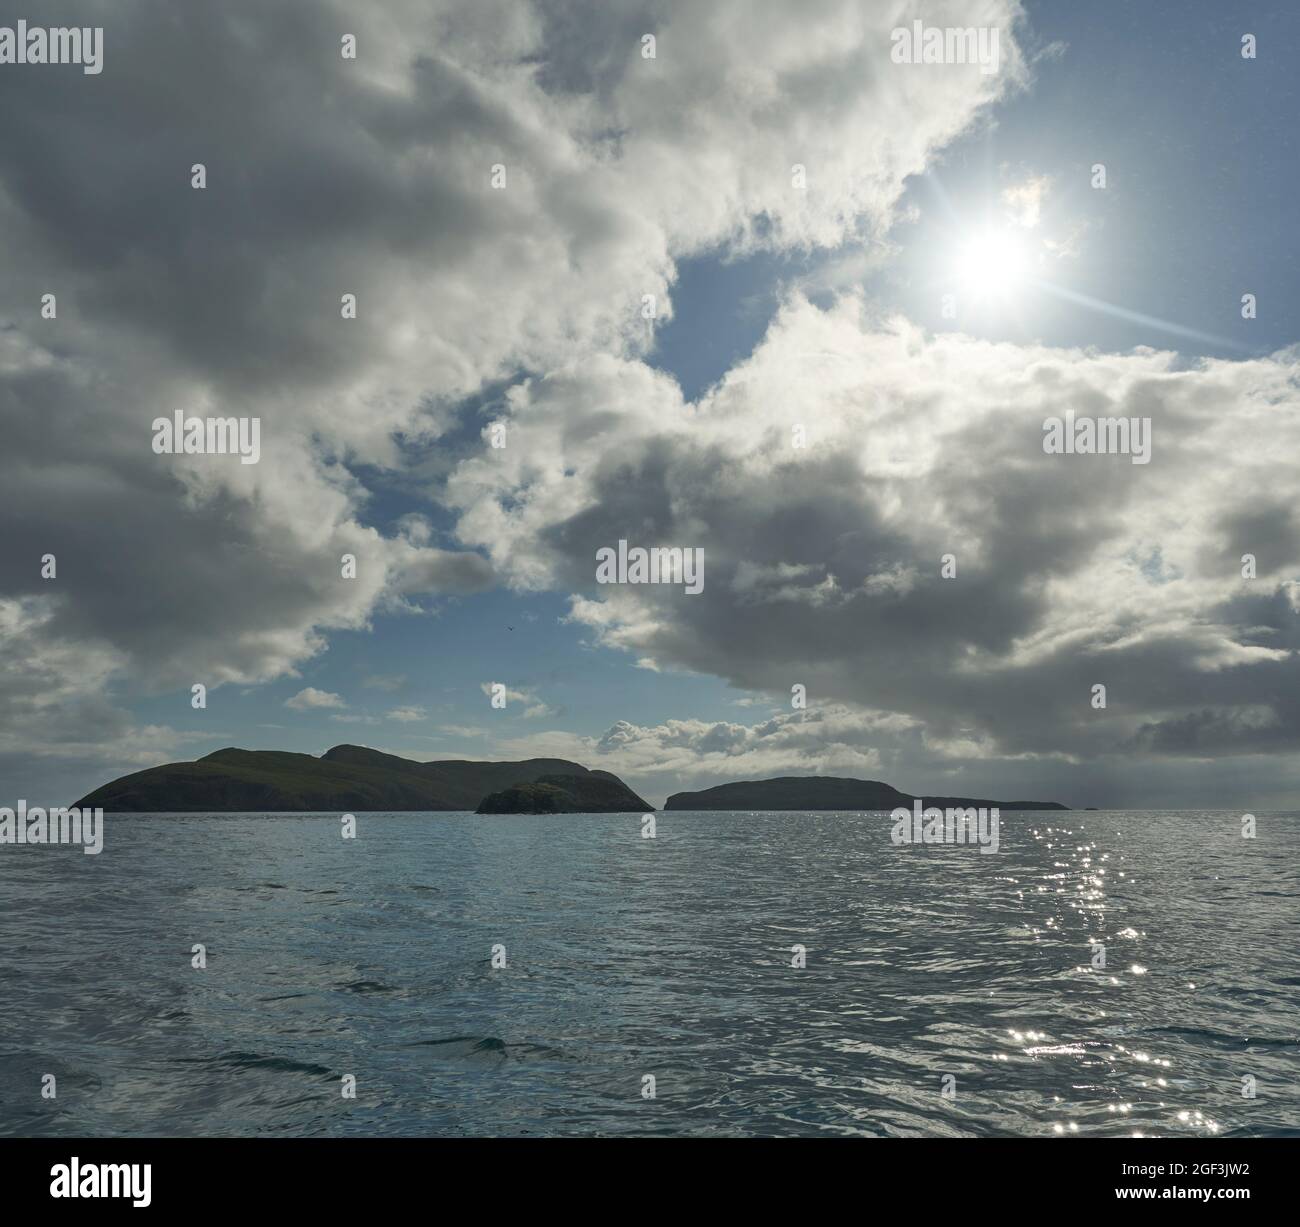 Le isole scianti viste da una barca in una gita di un giorno per visitarle. Foto Stock